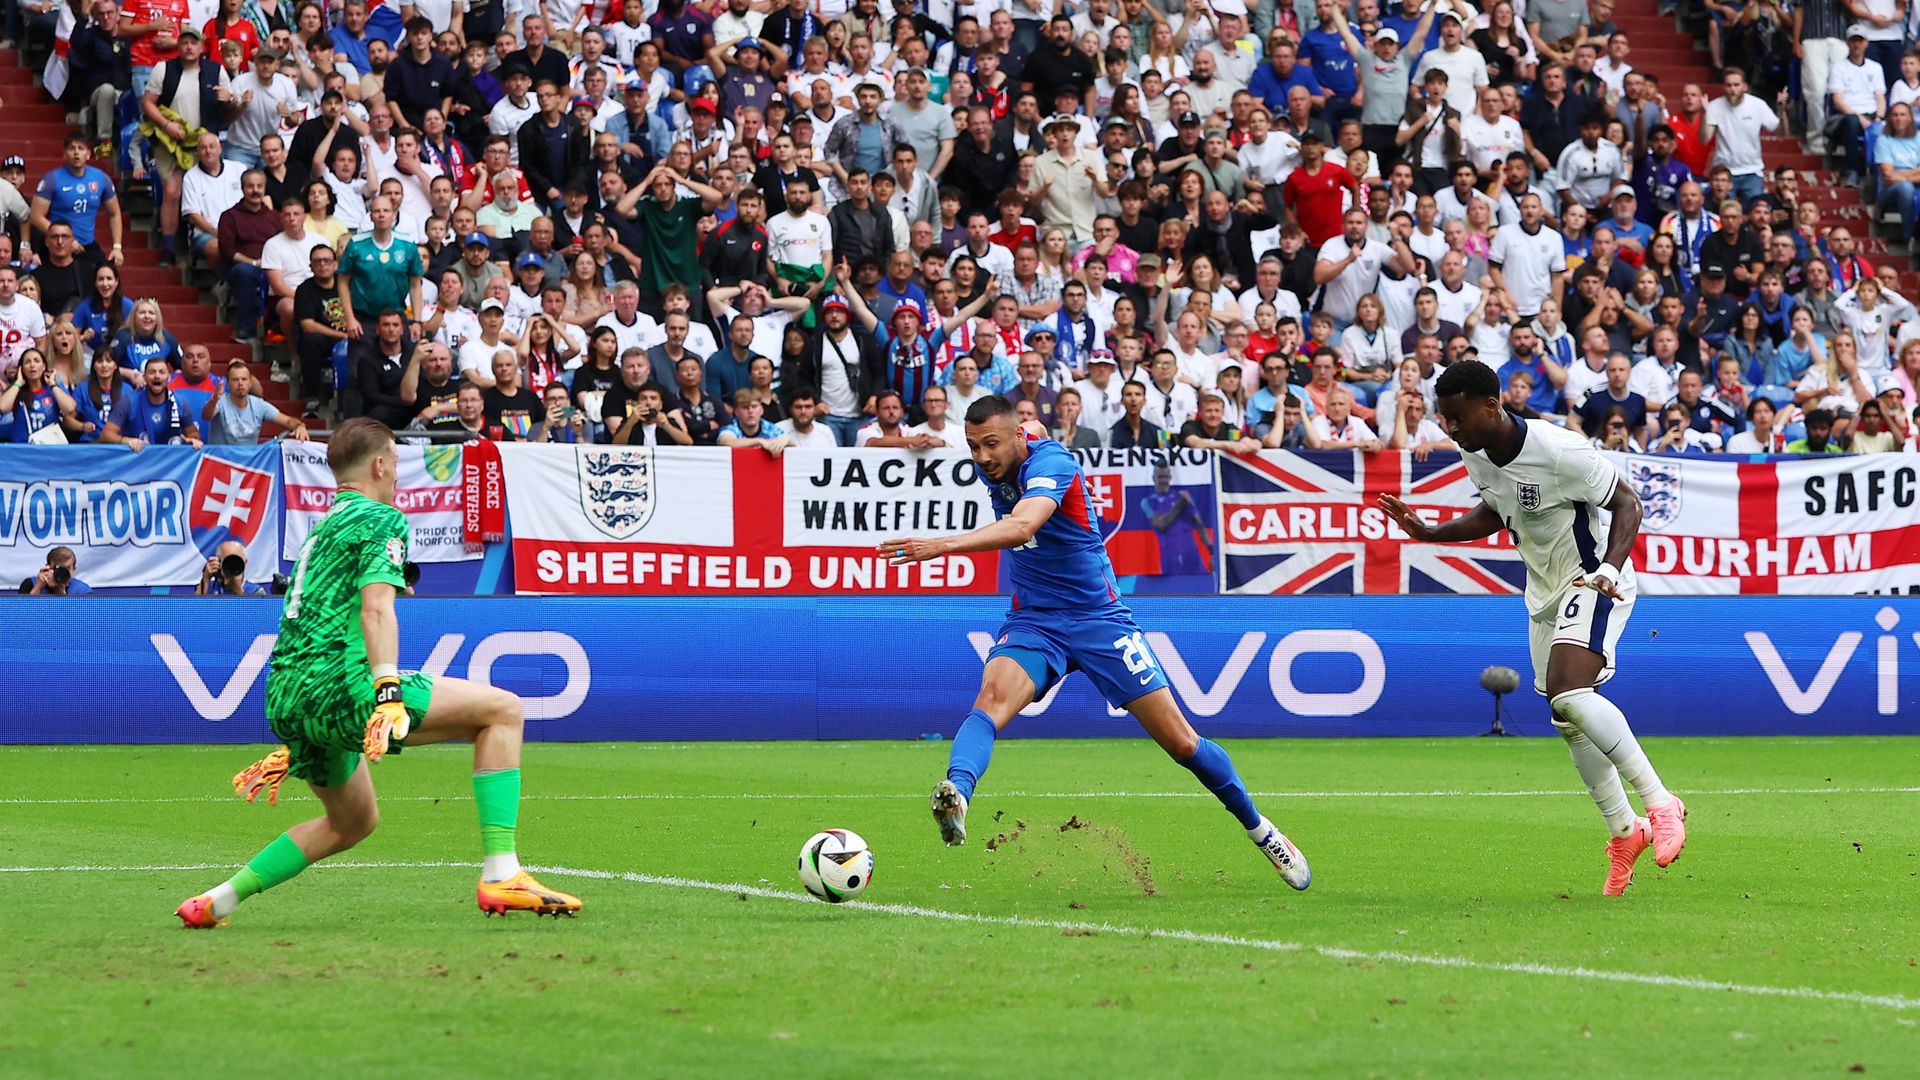 Ivan Schranz harmadik gólját szerezte ezen az Európa-bajnokságon. (Fotó: Getty Images)